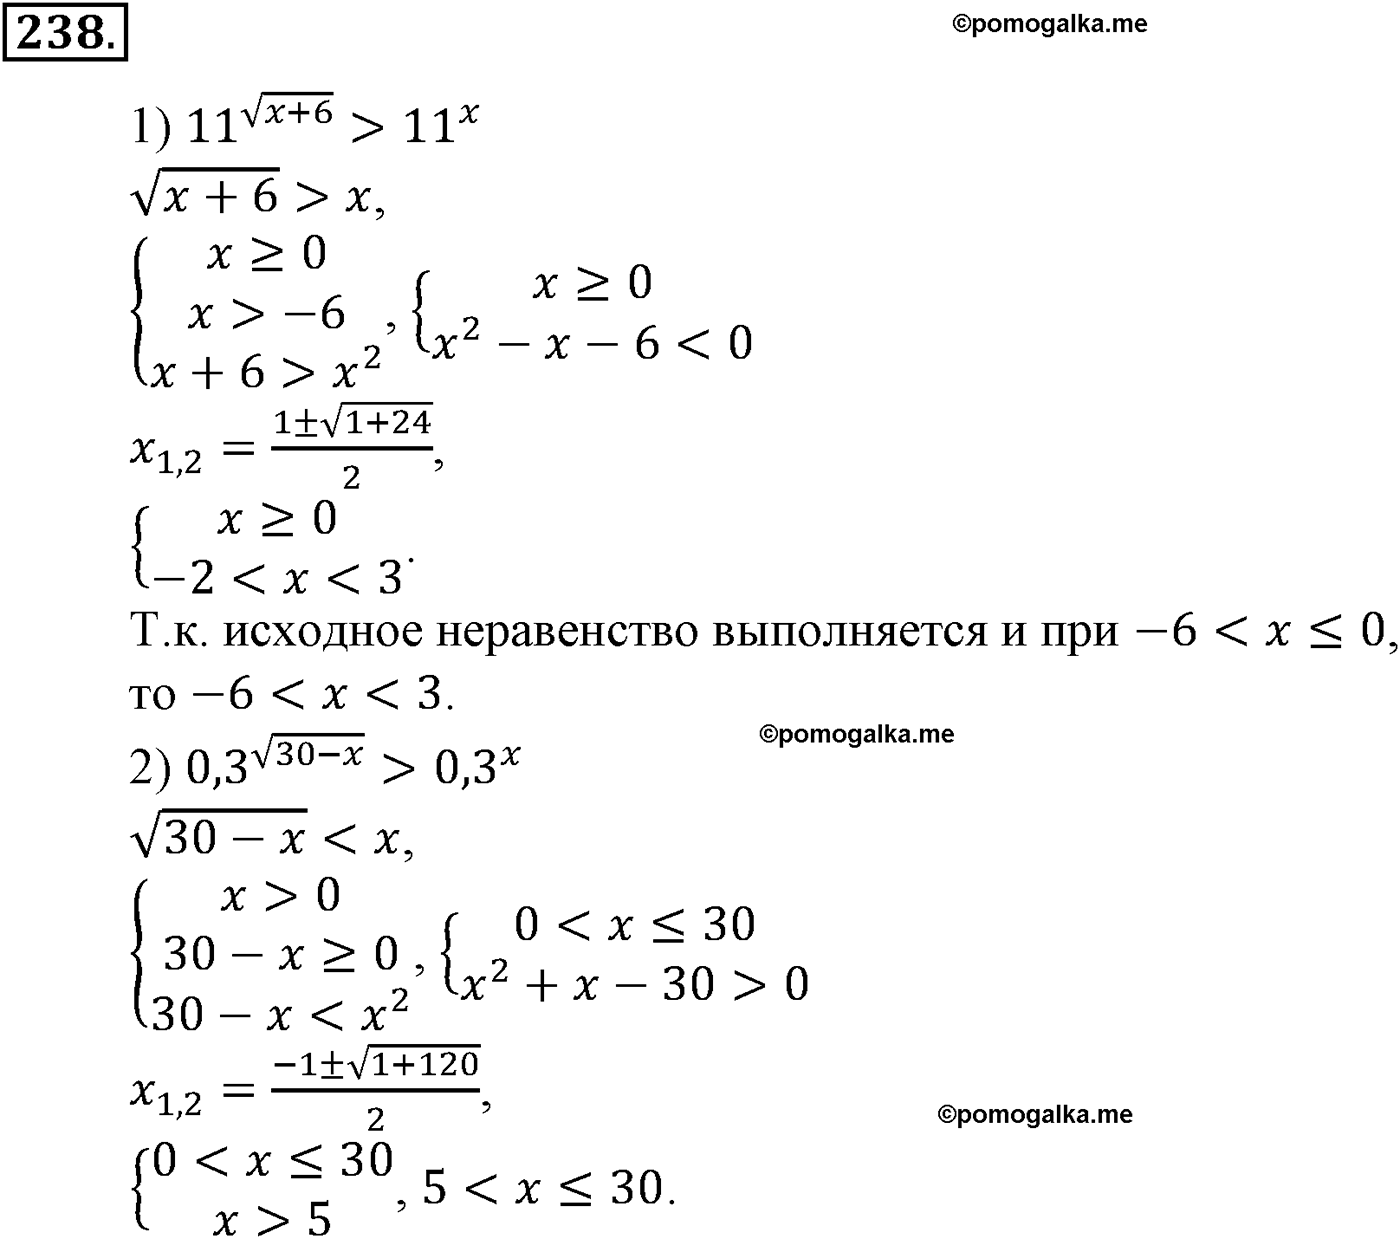 разбор задачи №238 по алгебре за 10-11 класс из учебника Алимова, Колягина